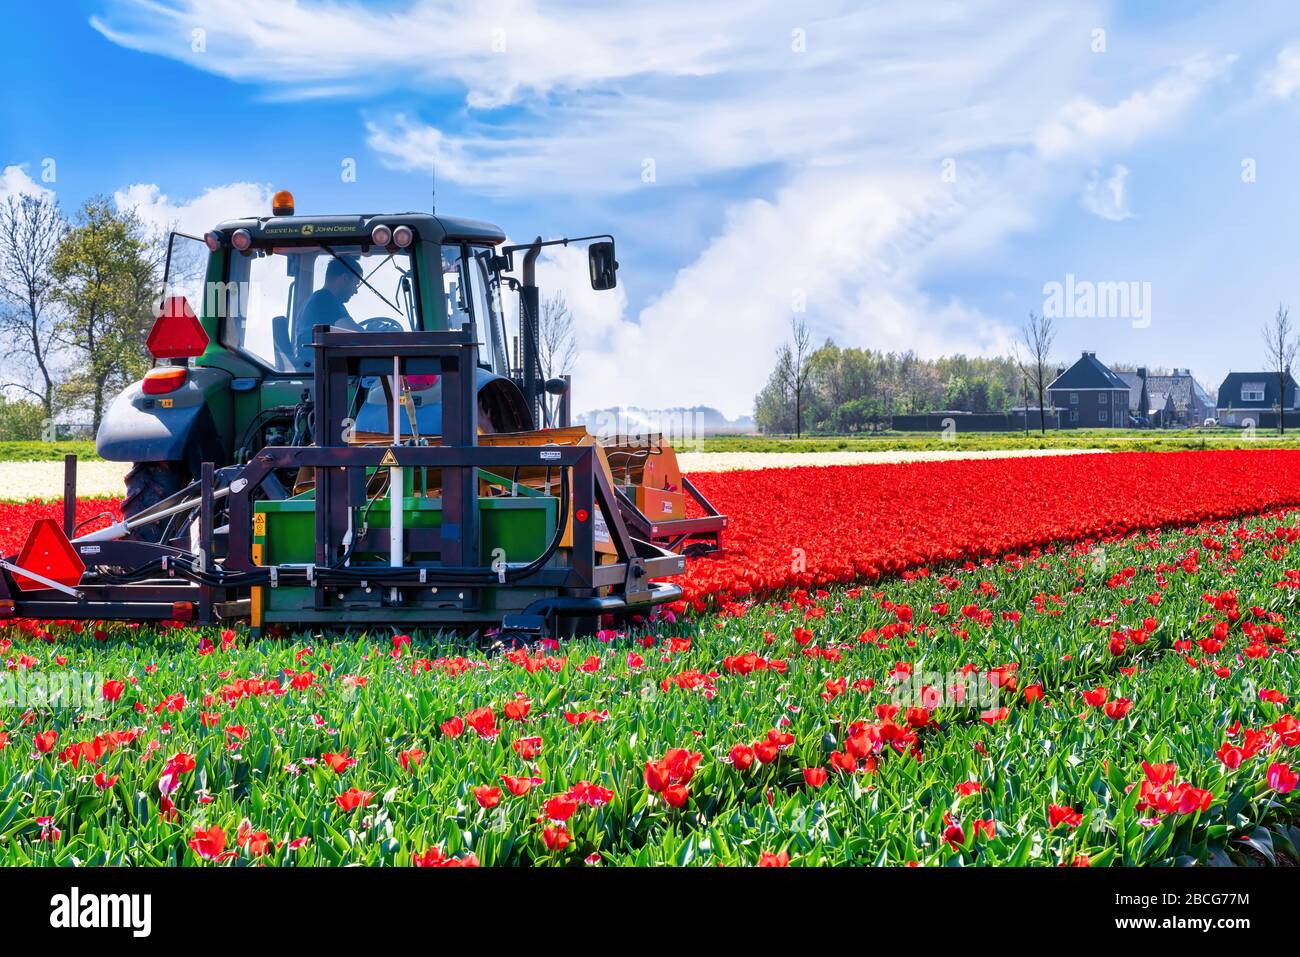 Pays-Bas, 04/19/2020: Coupe mécanisée des têtes de fleurs. Vers la fin du mois d'avril, beaucoup d'agriculteurs sont en train de faire des tulipes pour que les ampoules puissent obtenir la distribution Banque D'Images